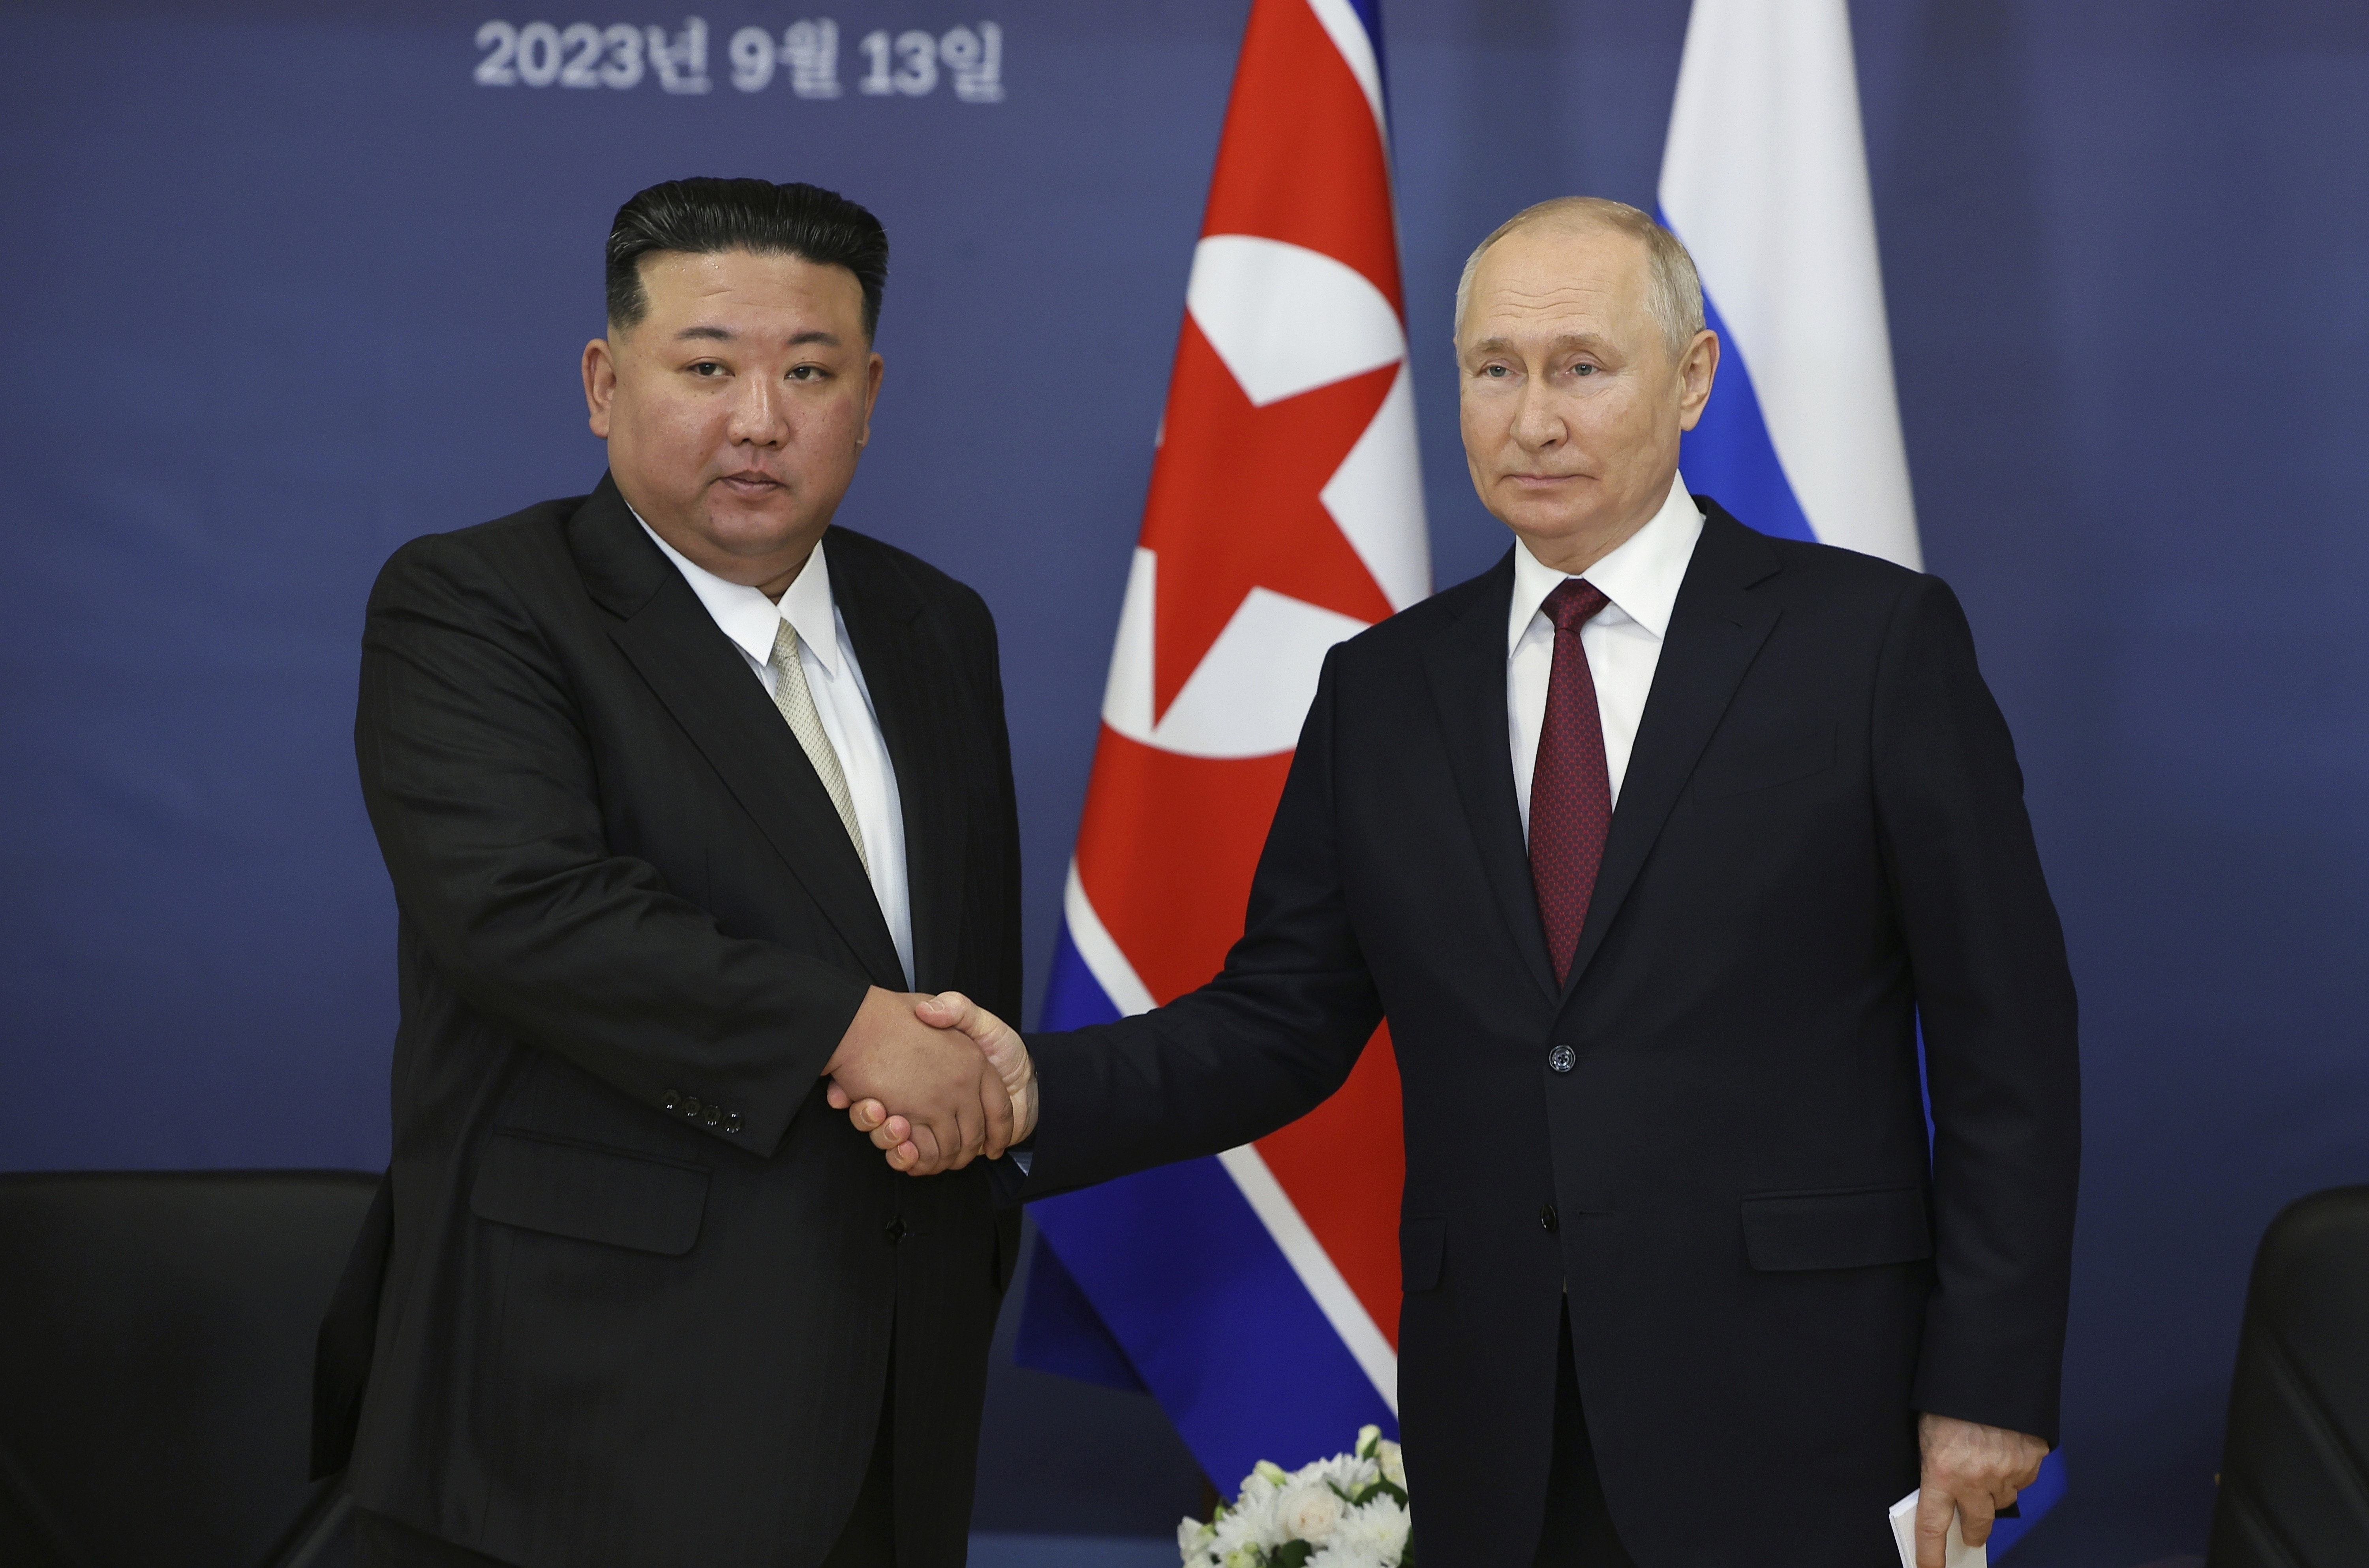 Κιμ Γιονγκ Ουν: Αδελφικοί οι δεσμοί μας με τη Ρωσία